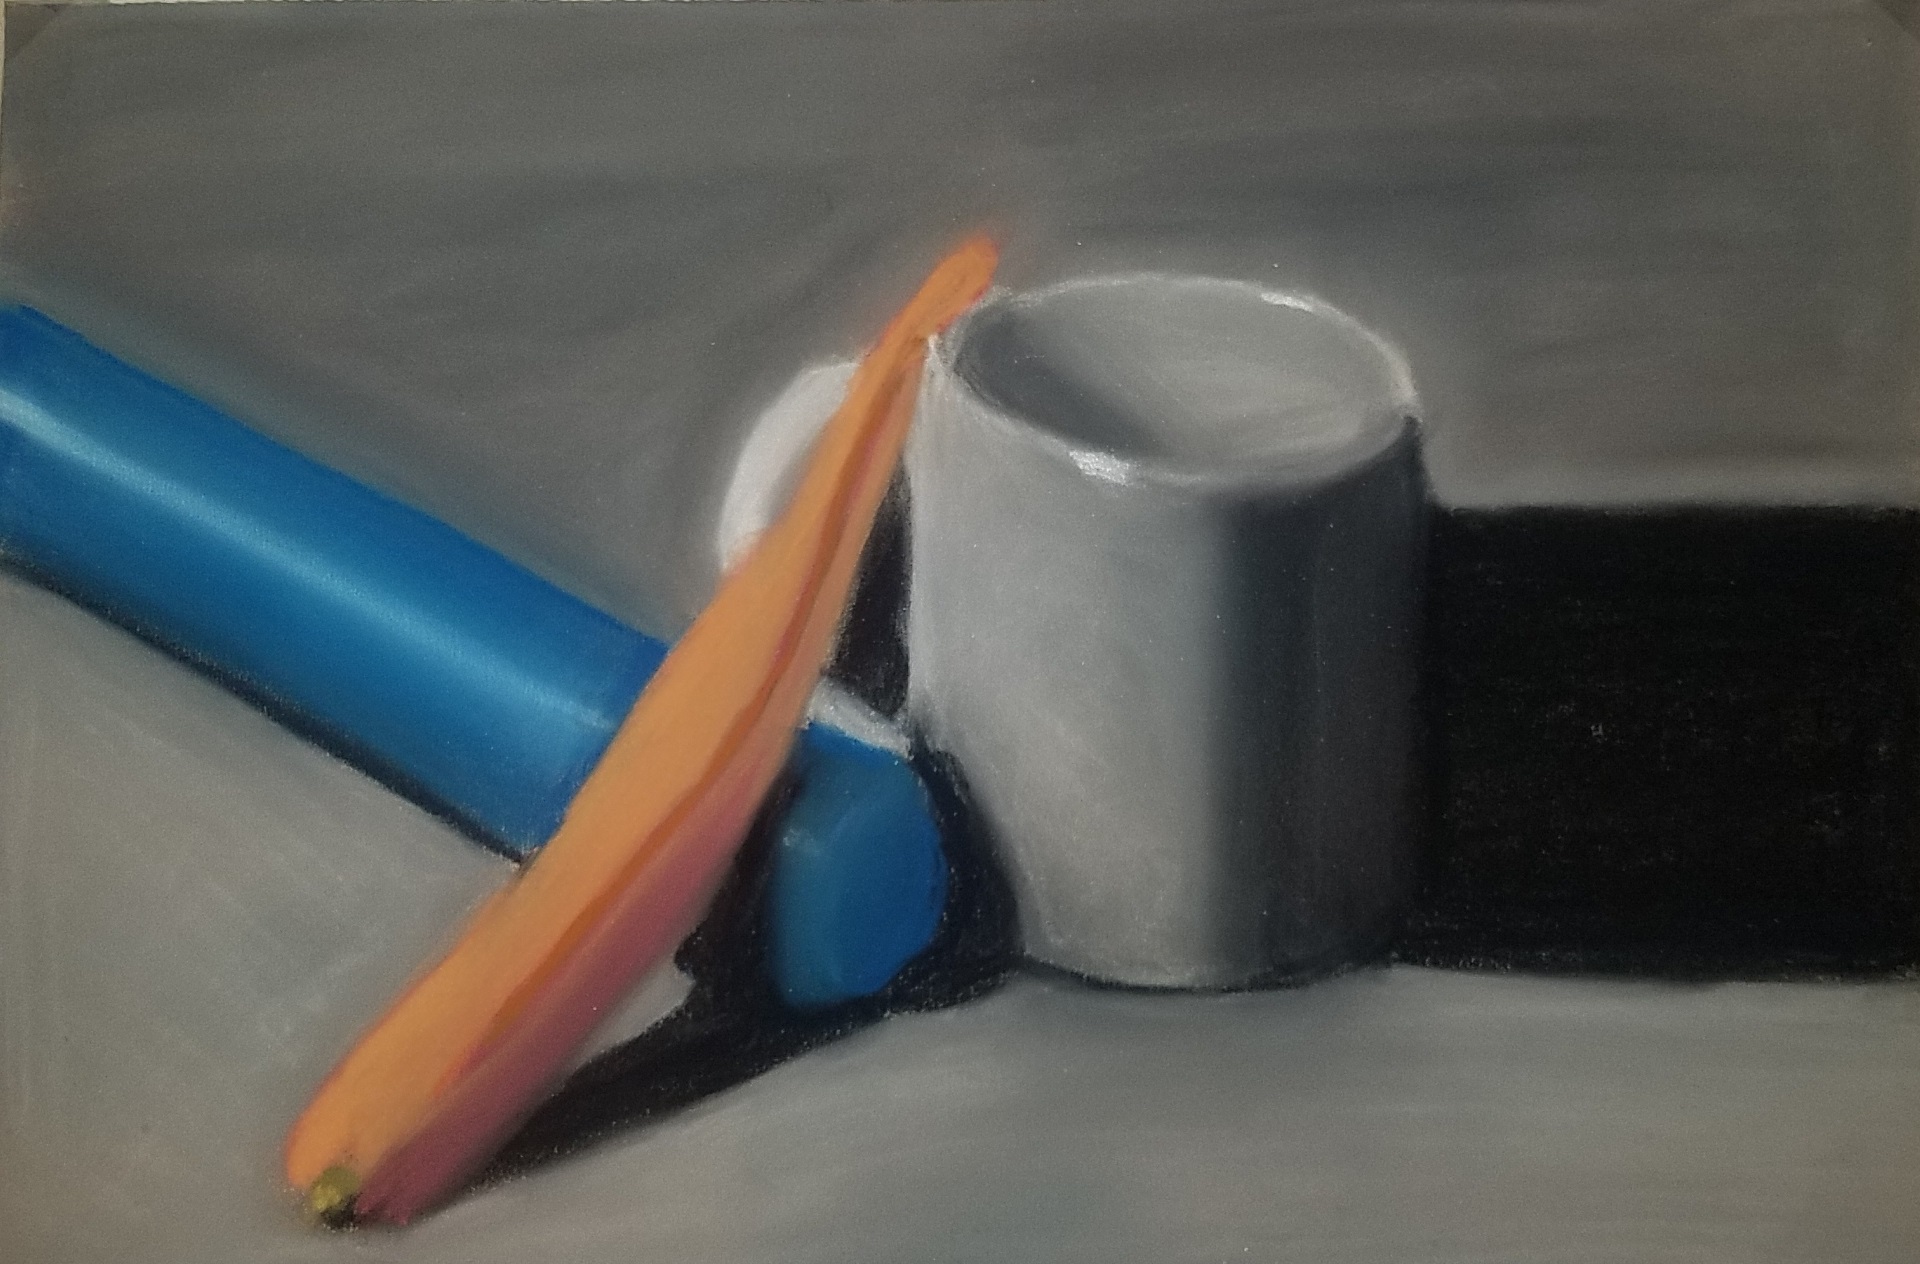 pastel blue flashlight next to carrot next to white coffee mug